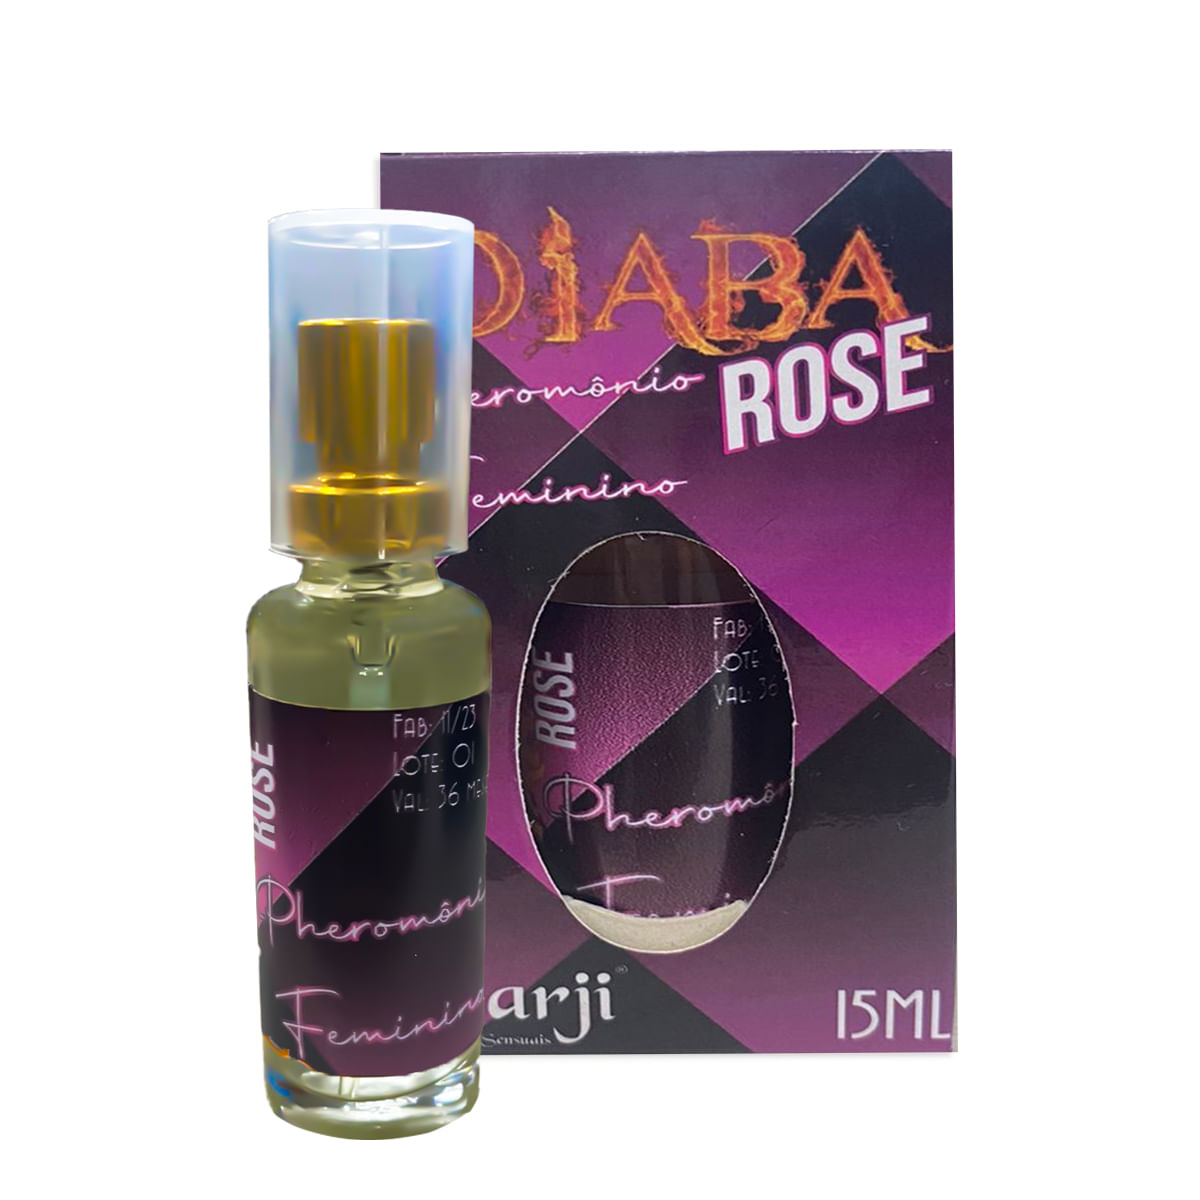 Diaba Rose Perfume Feminino 15ml Garji